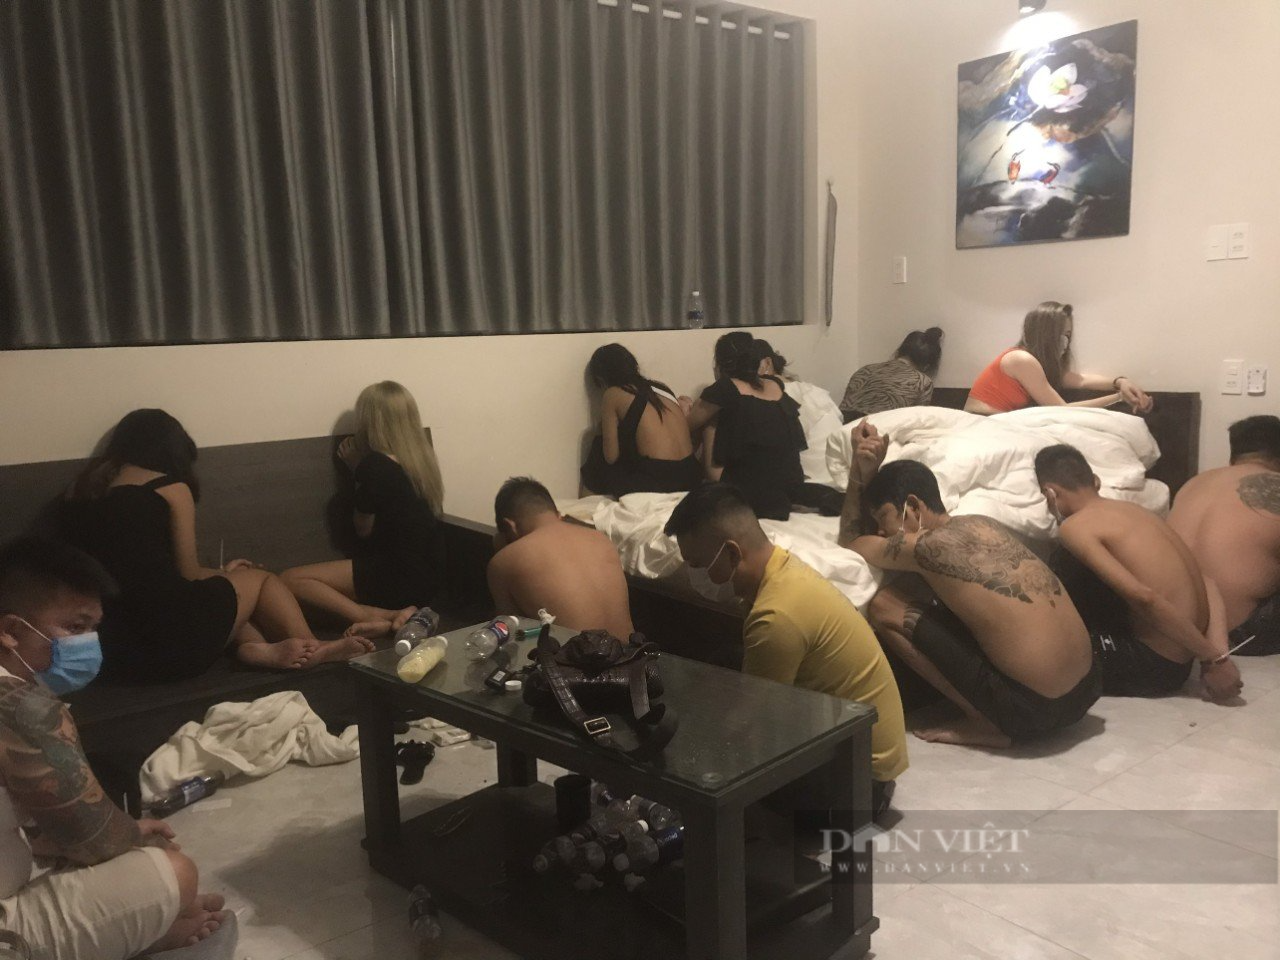 Bình Định: Hơn 80 người thuê resort để dùng ma túy  - Ảnh 1.